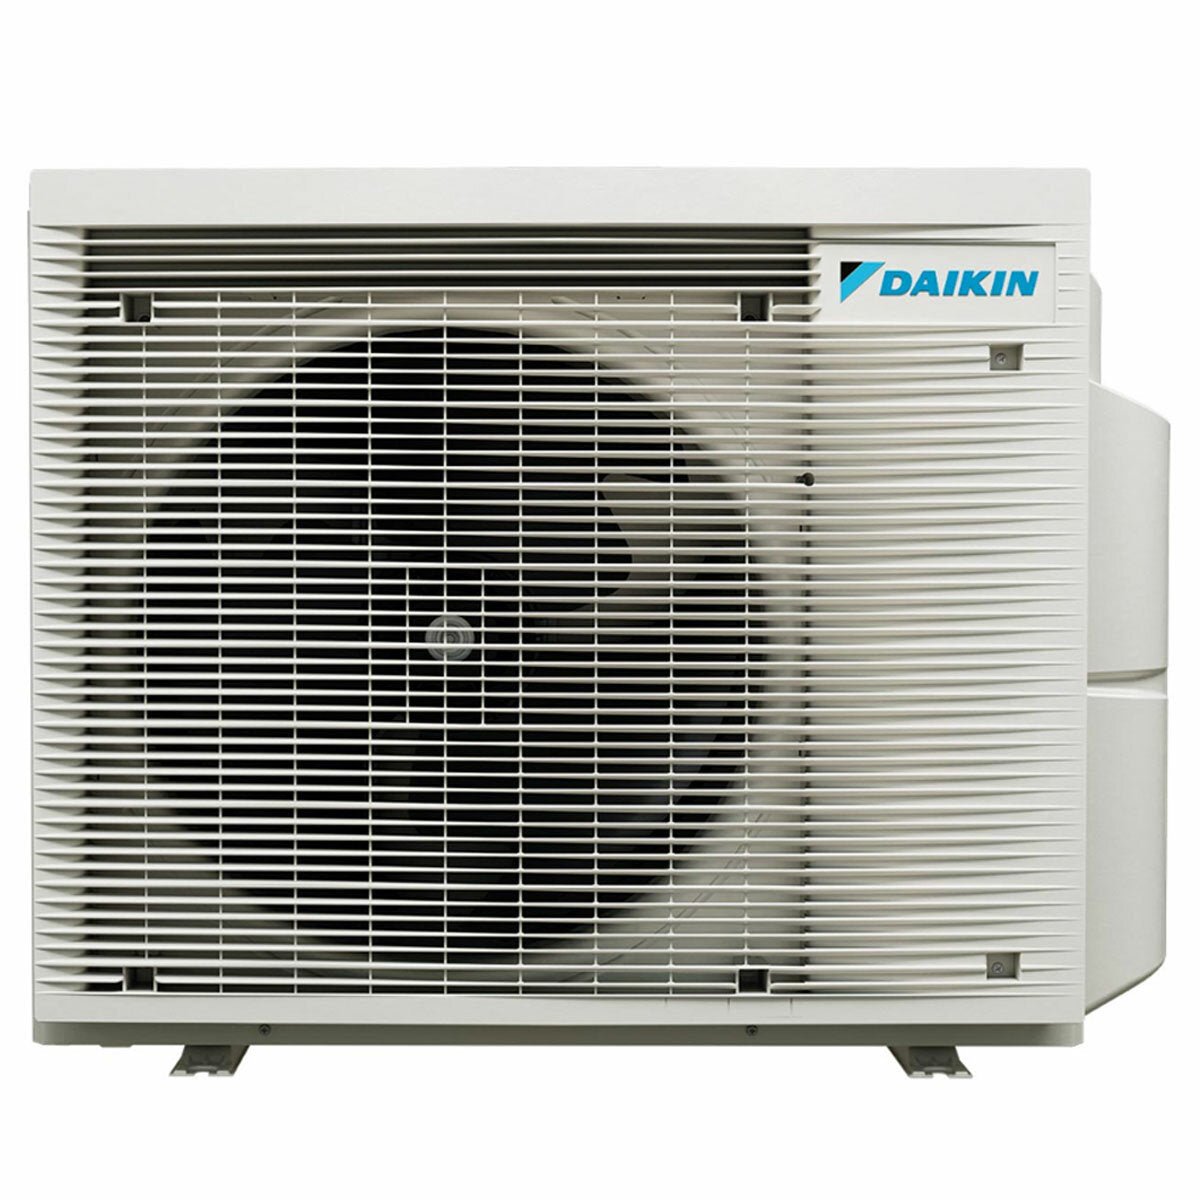 Daikin Stylish White Penta-Split-Klimaanlage 7000+9000+9000+9000+18000 BTU Inverter A++ WLAN-Außeneinheit 7,8 kW